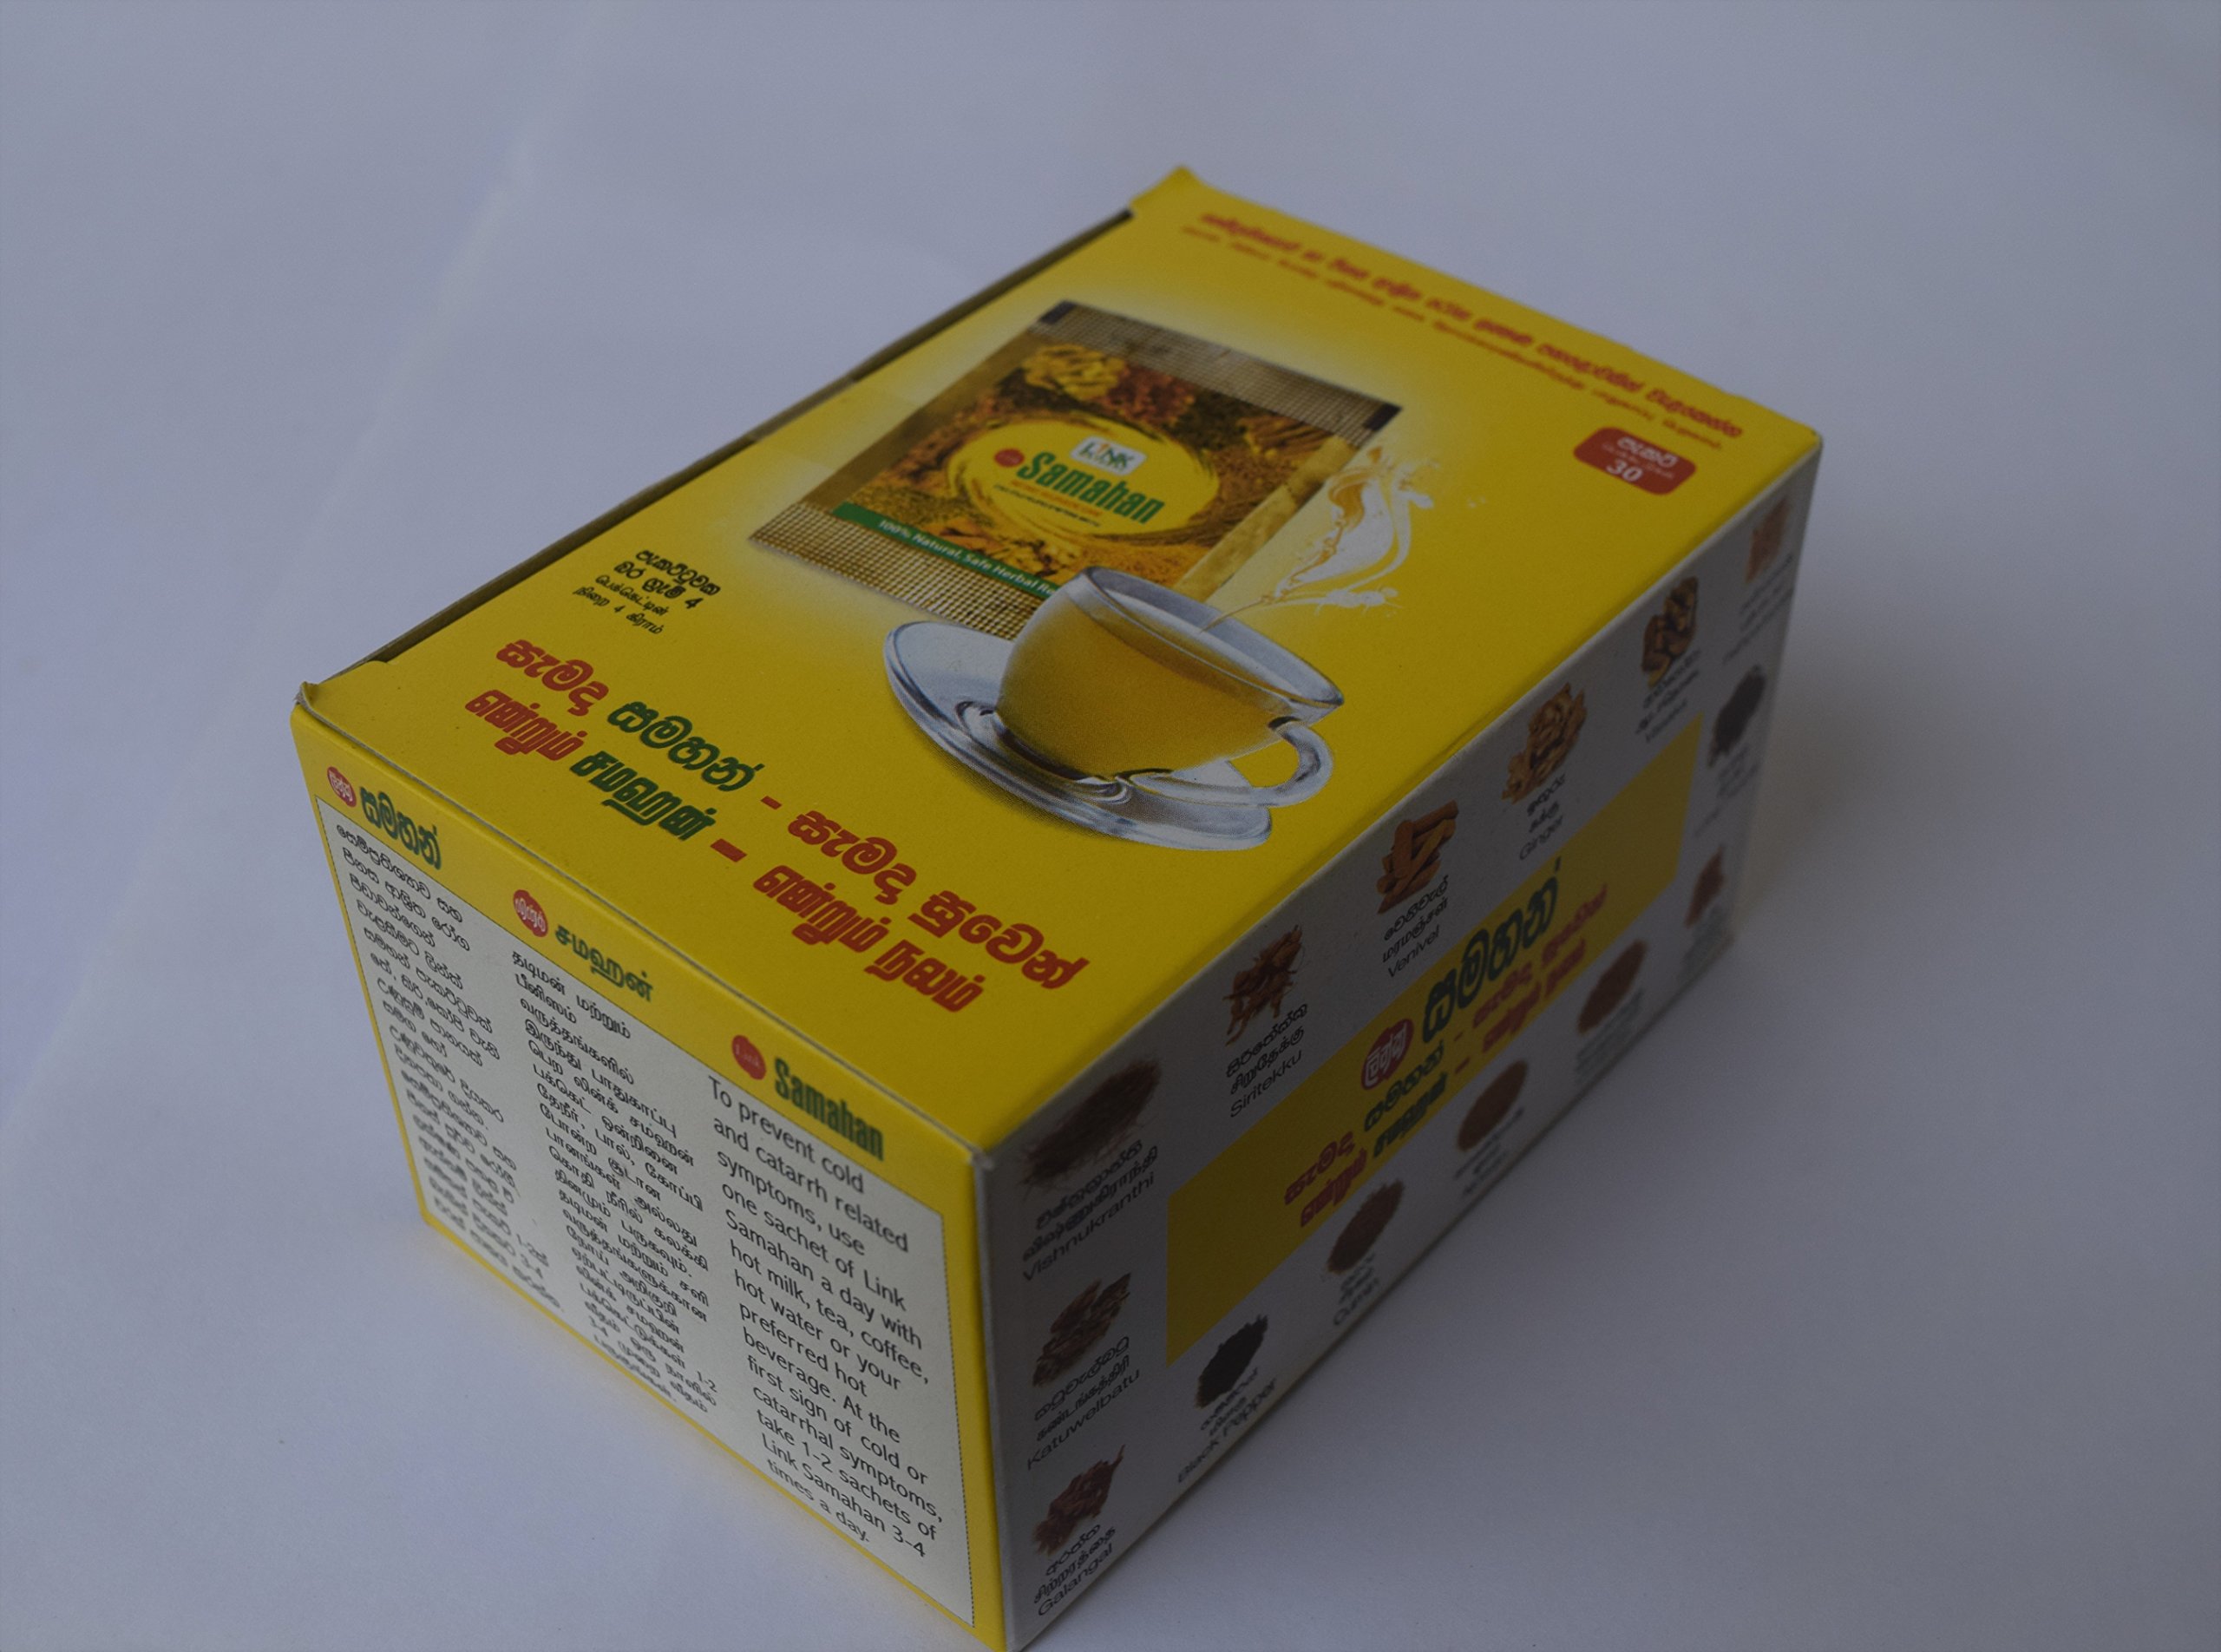 Samahan Herbal Tea (30bags)